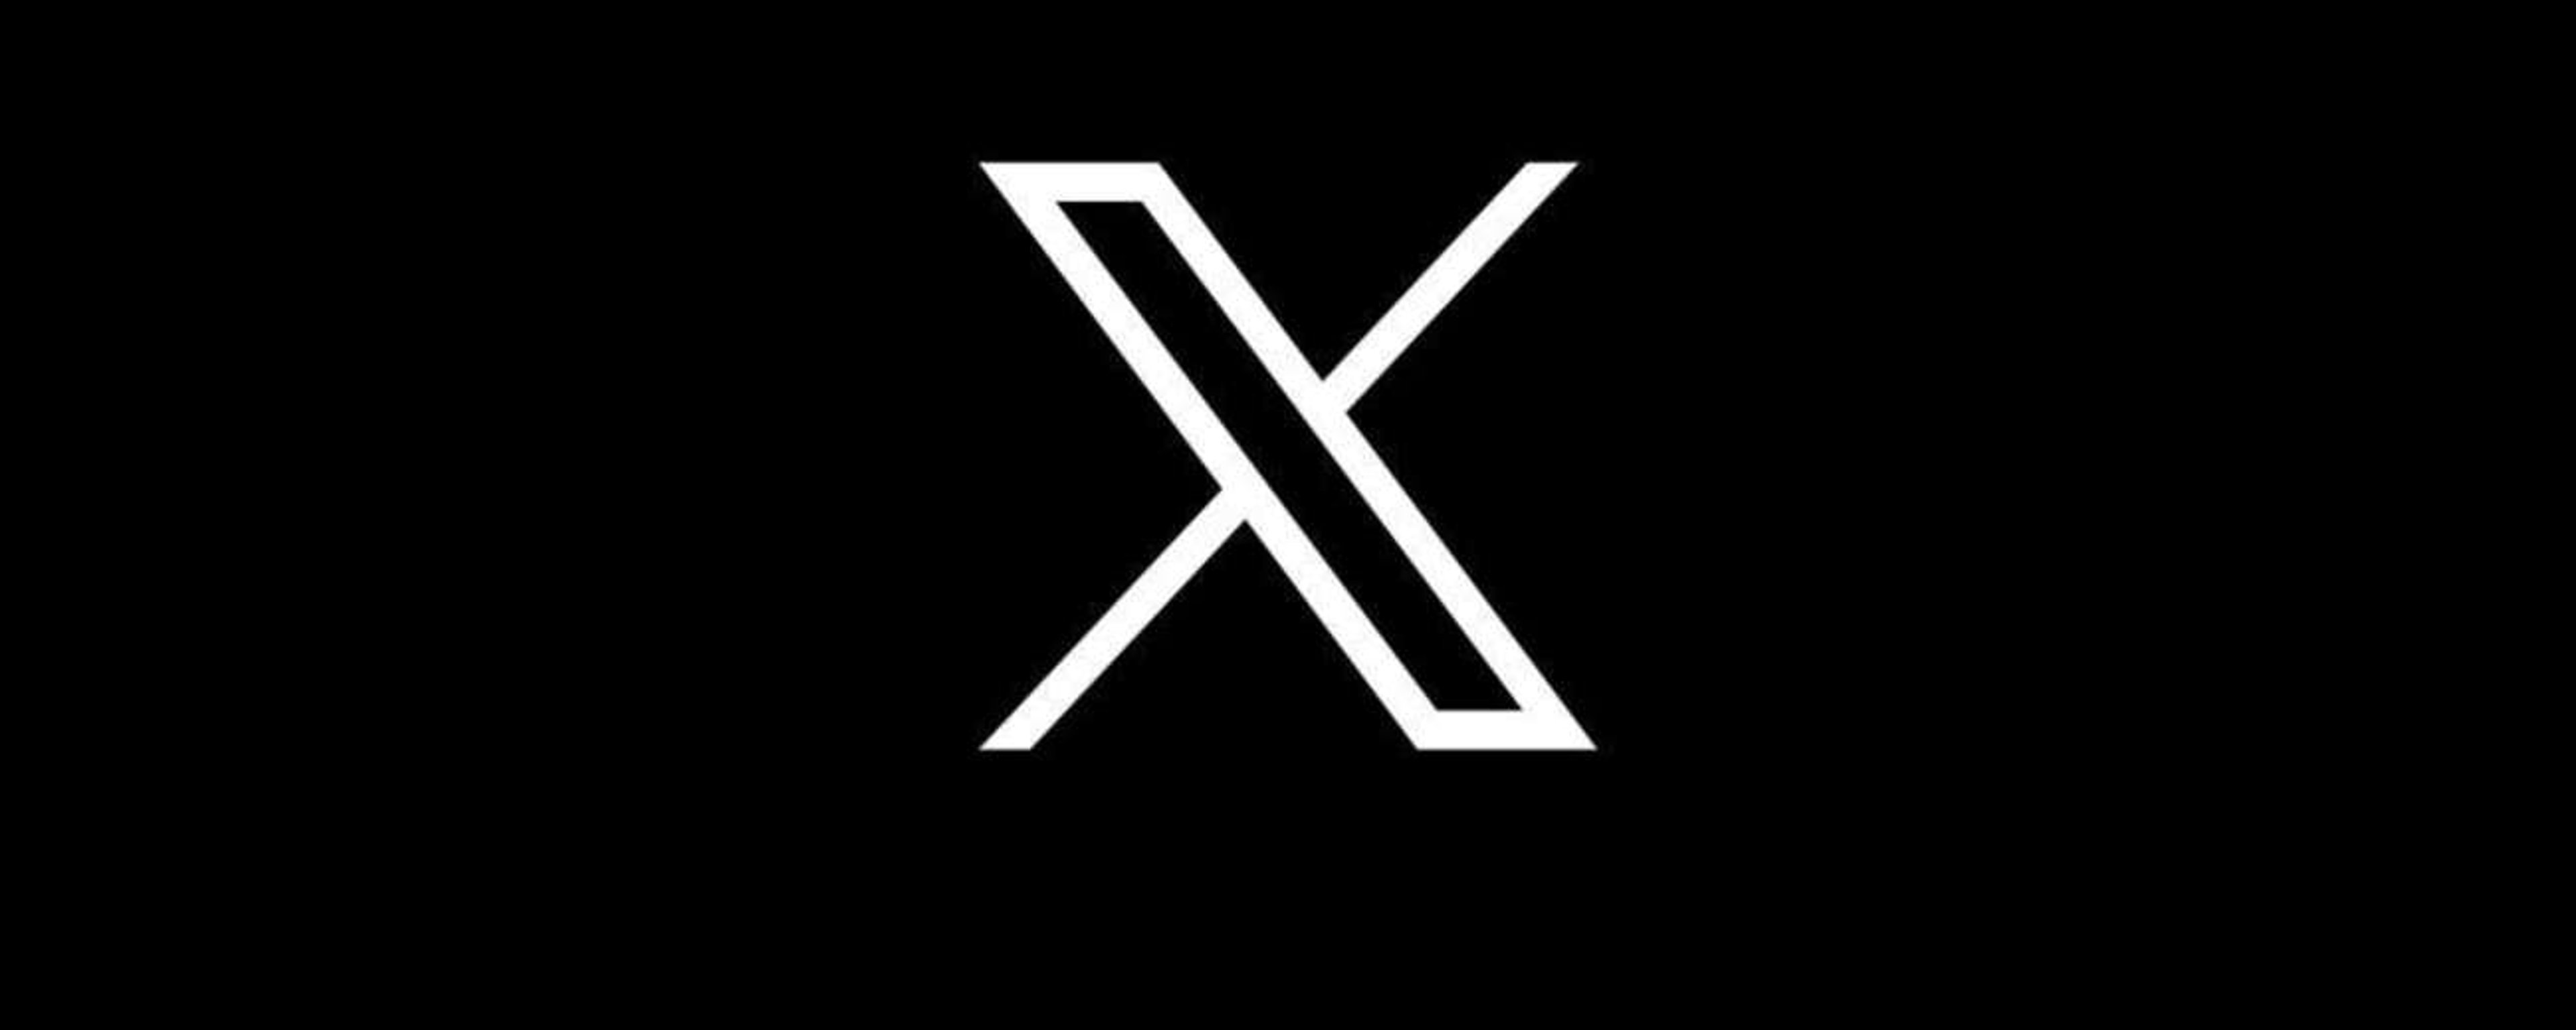 Twitter è “morto”: X è ora disponibile su iOS Cover